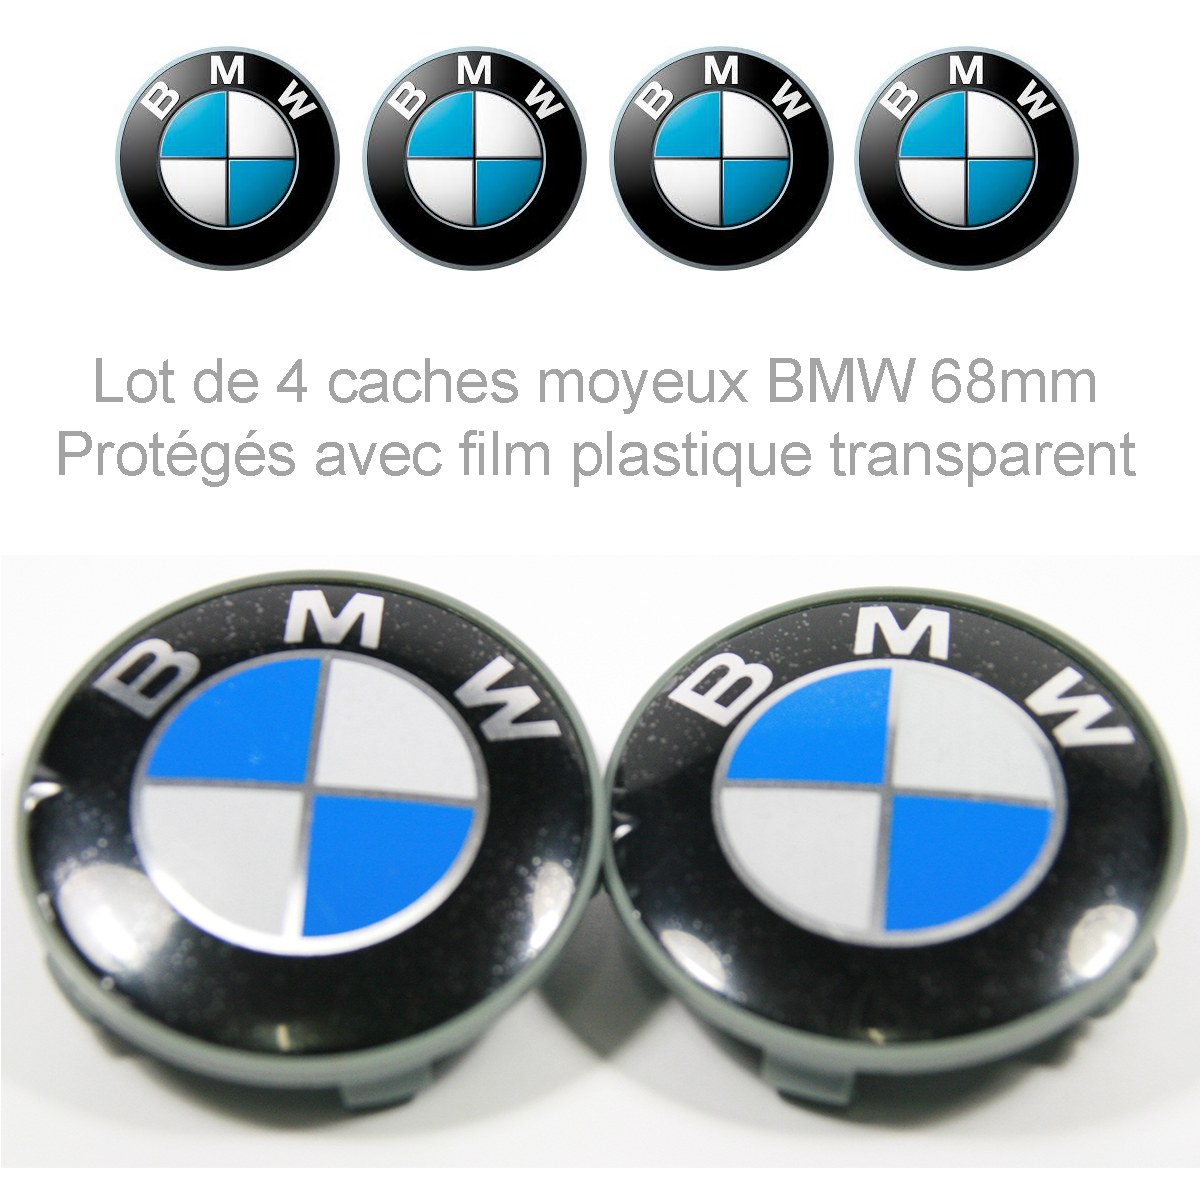 Caches moyeux centre de roues BMW 68mm logo BMW chrome fond noir.